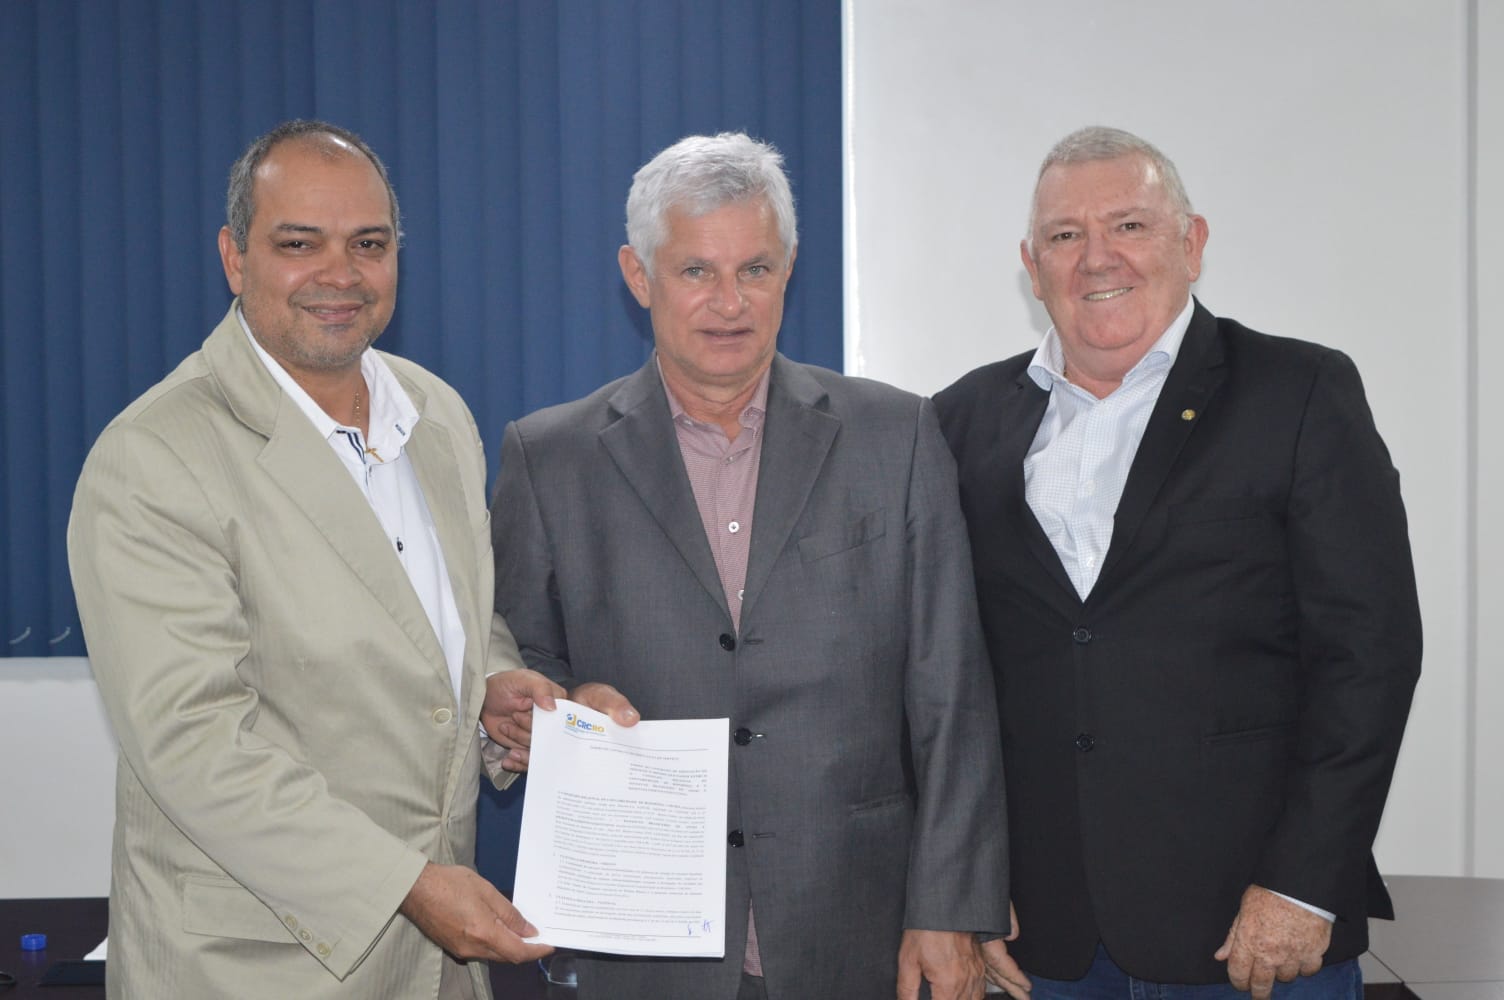 CT Jose Claudio Ferreira Gomes (E), Silvio Eduardo Lutz (C), CT Jair Genor Bevilaqua (D) – Foto: Ezequiel Nascimento / CPD - CRCRO